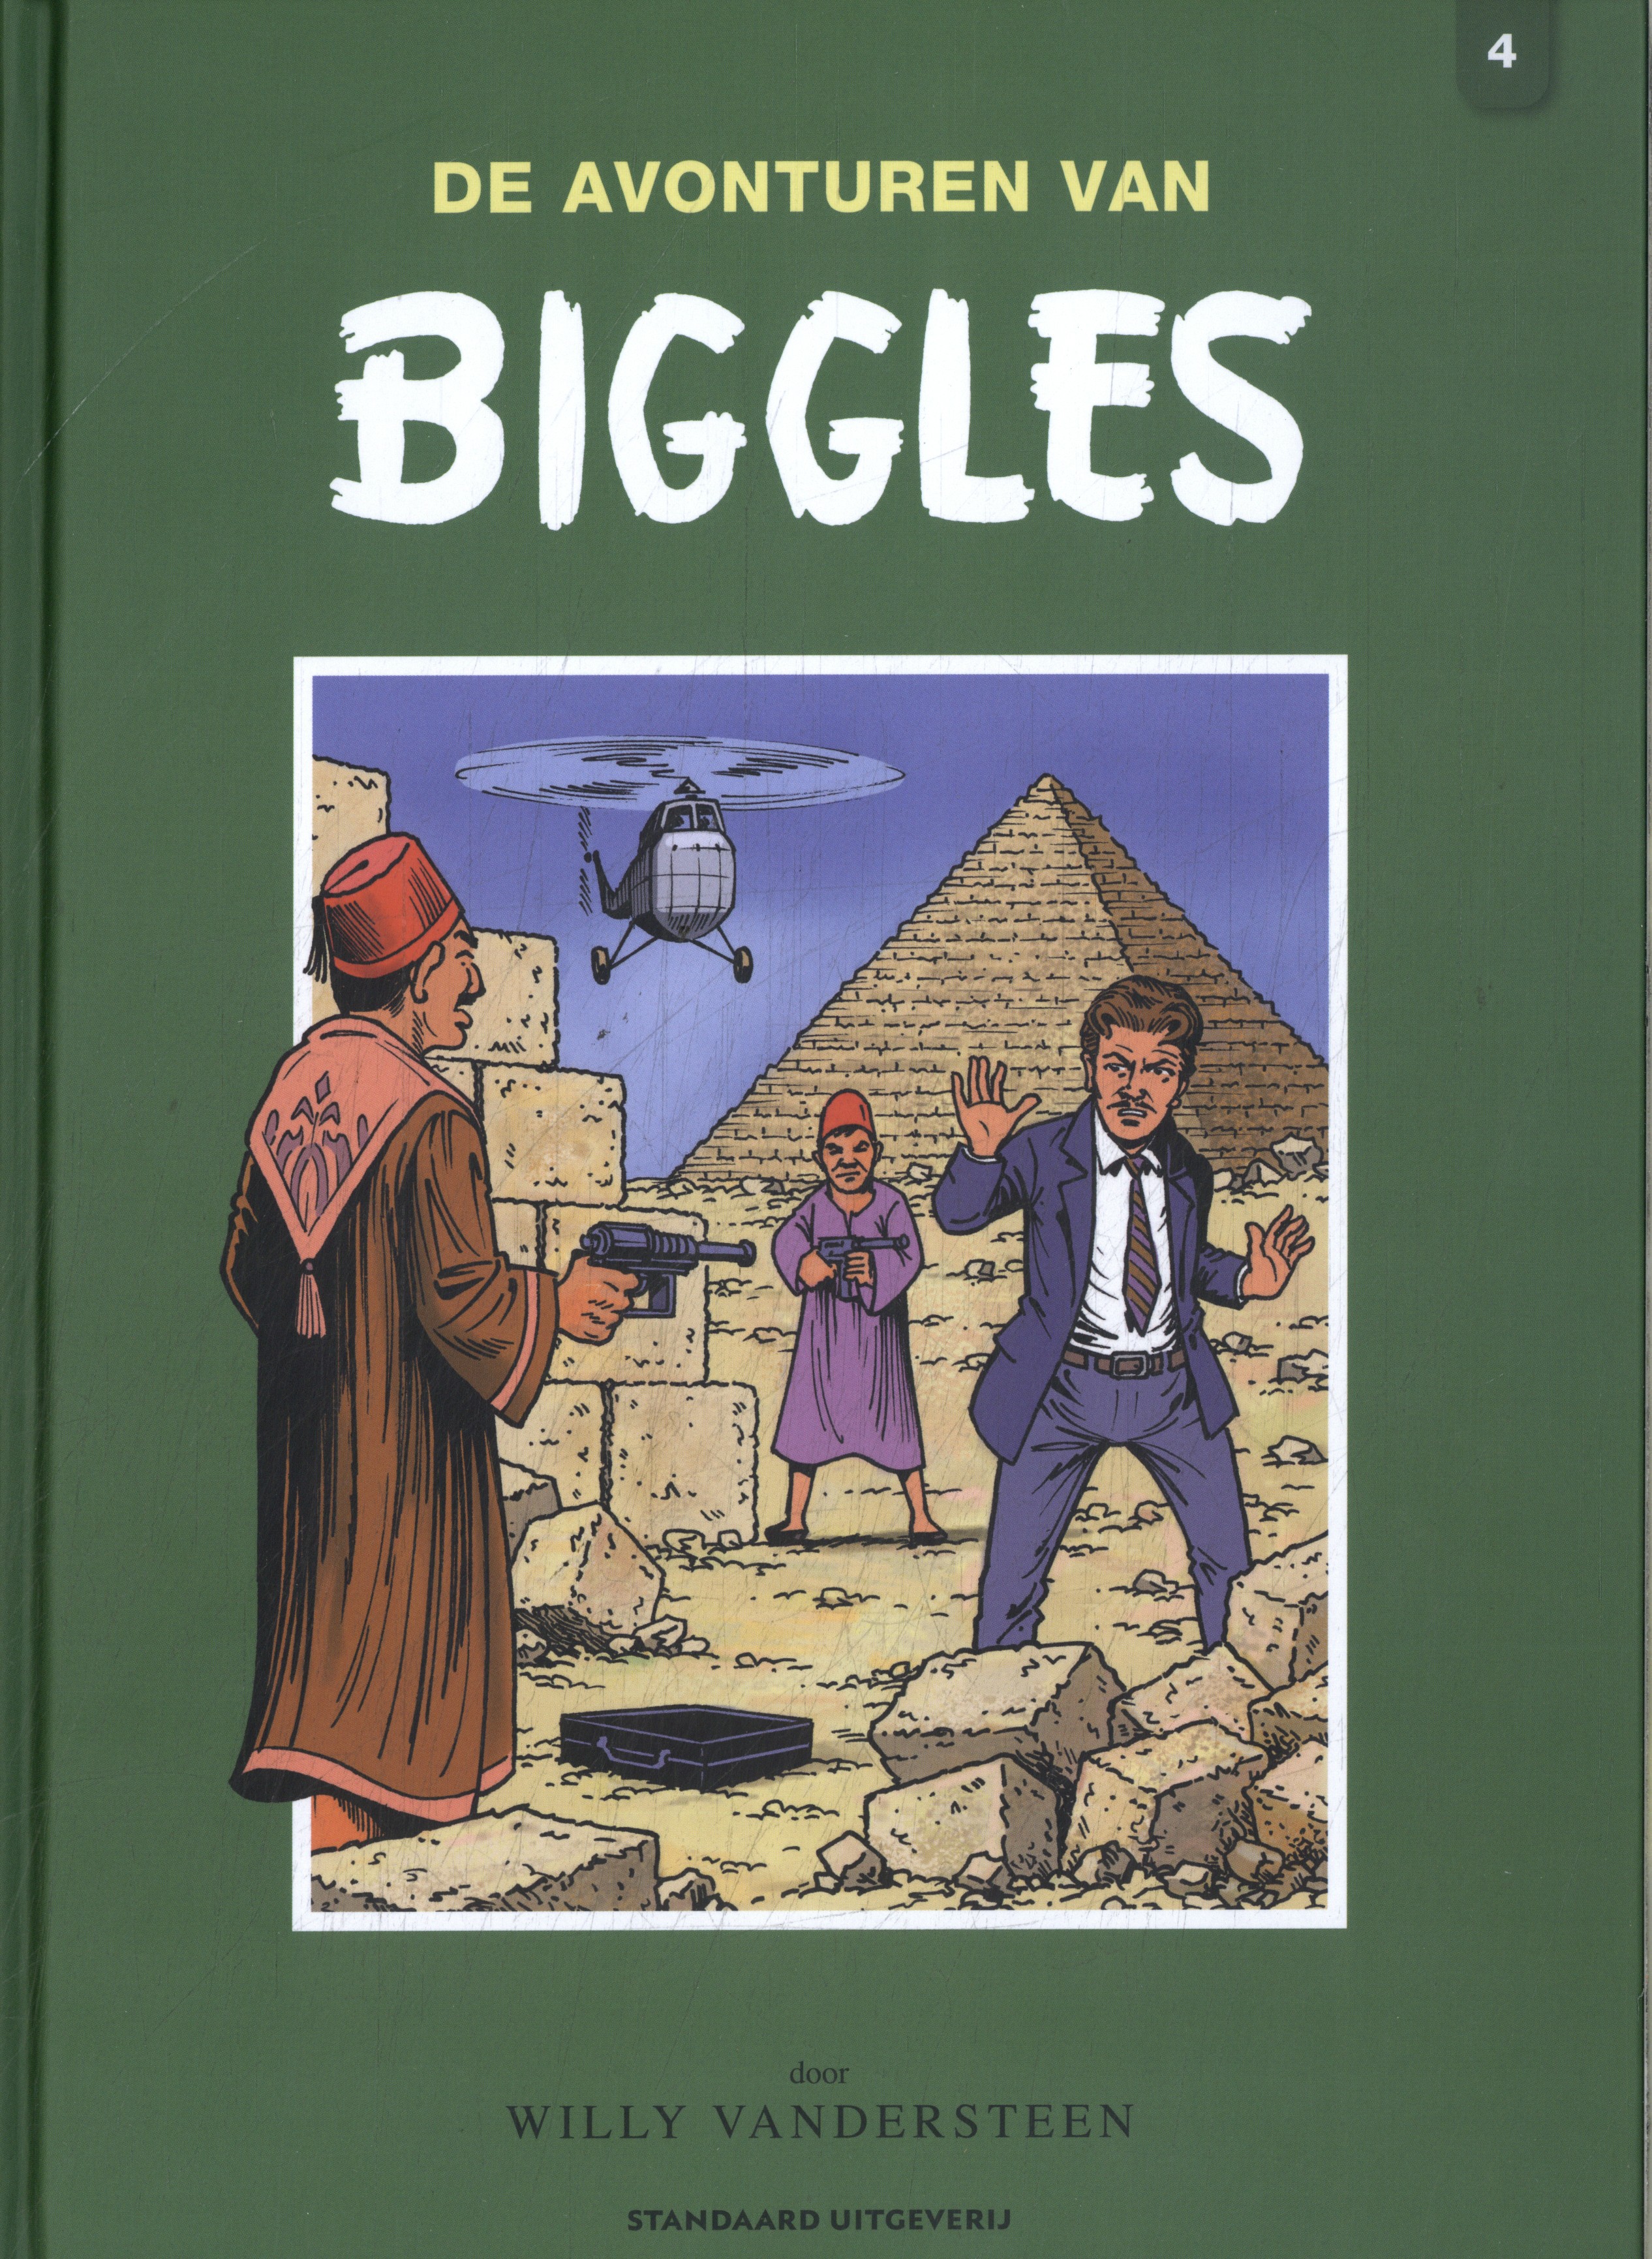 De avonturen van Biggles